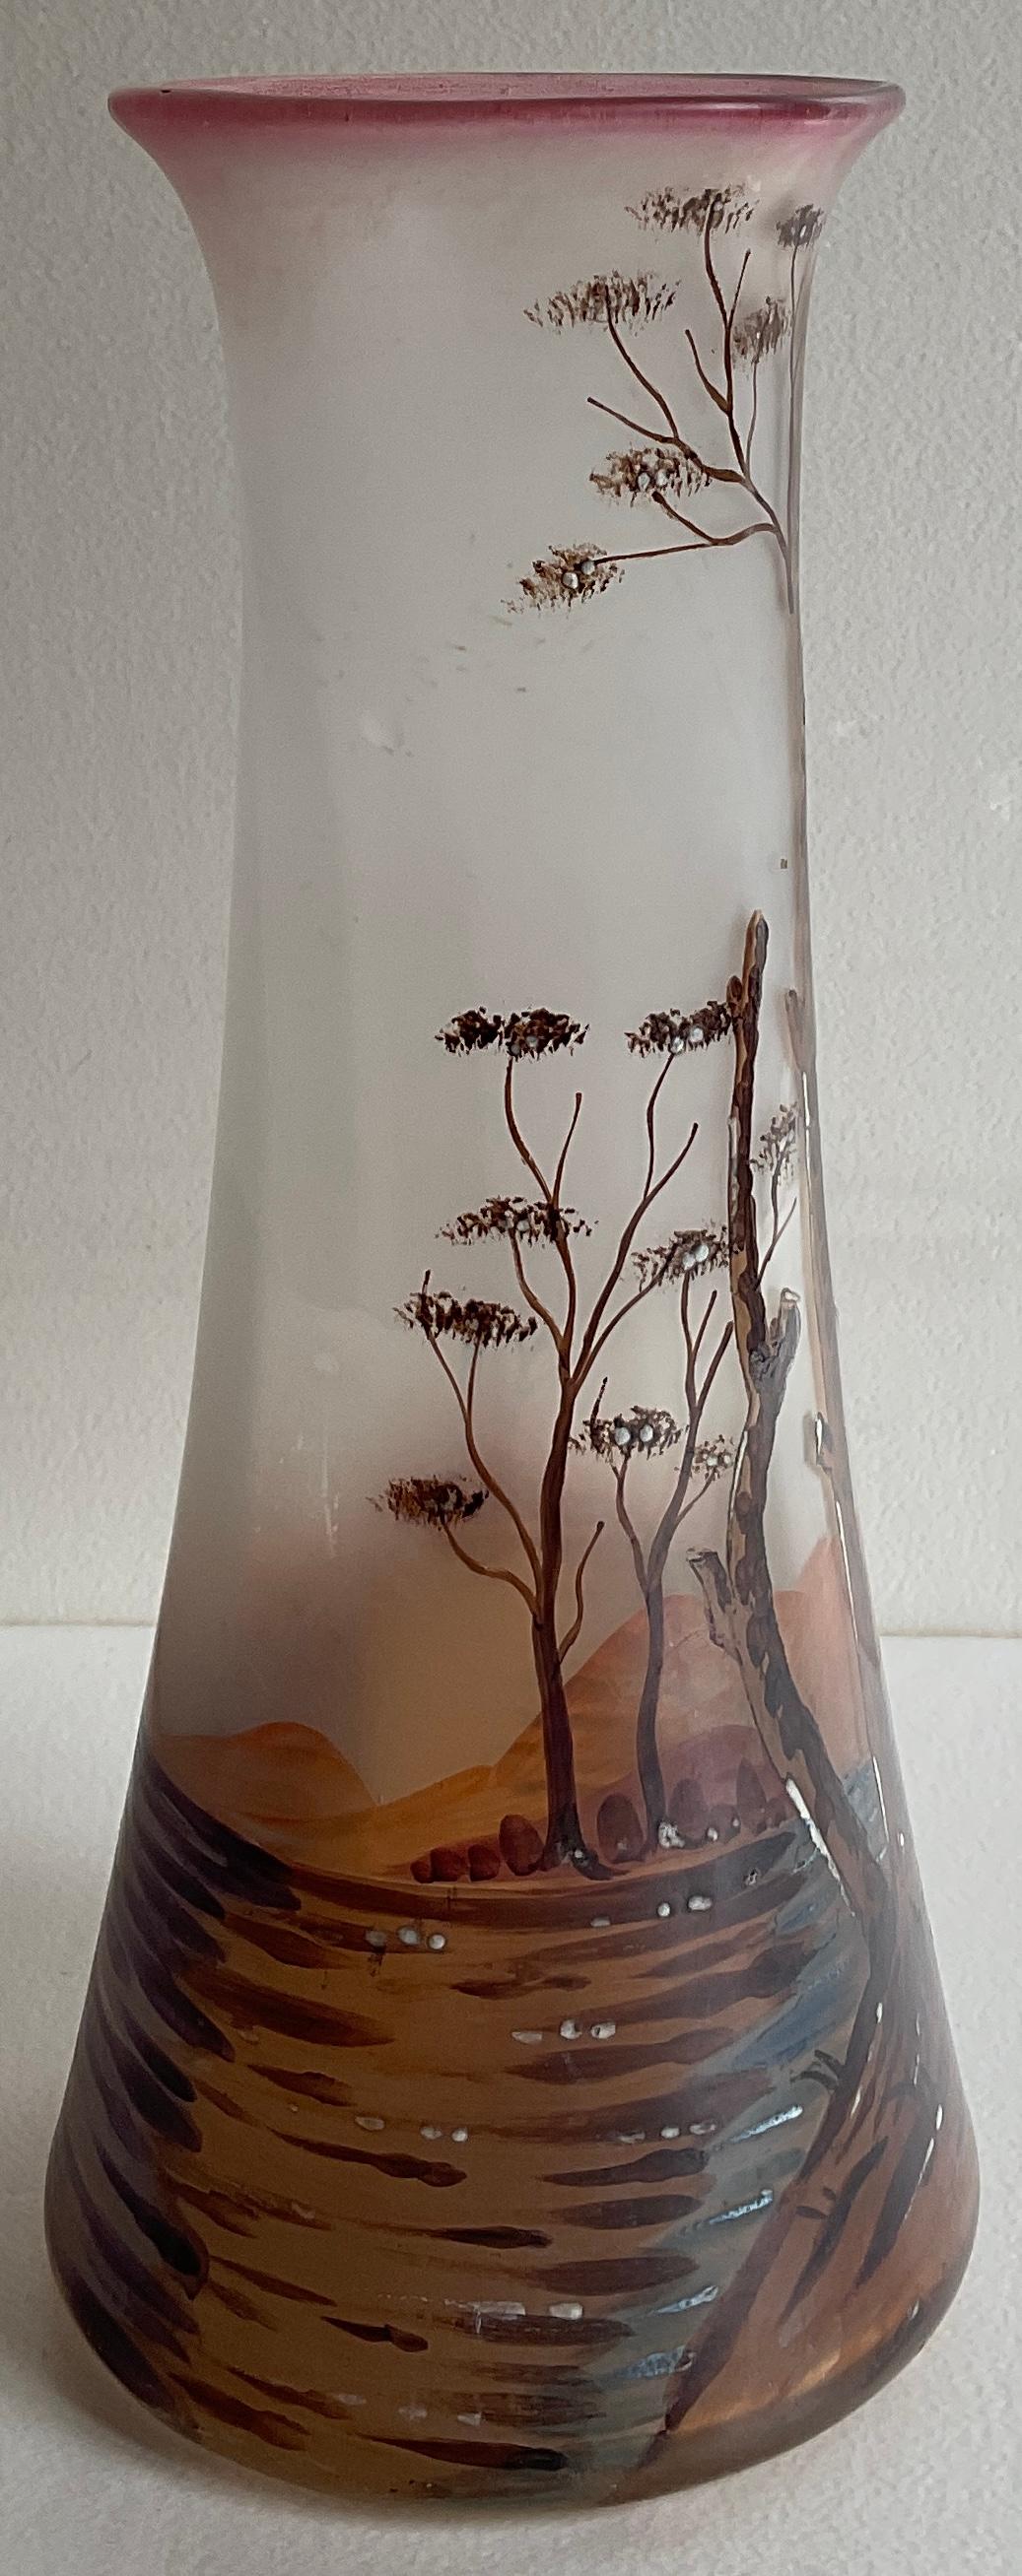 Precioso jarrón francés de cristal esmaltado del periodo Art Nouveau, hacia 1930. El intrincado y detallado trabajo es obra de François-Théodore Legras.

El tubo de este jarrón está agrandado y tiene un fondo rosa oscuro. Está decorada con